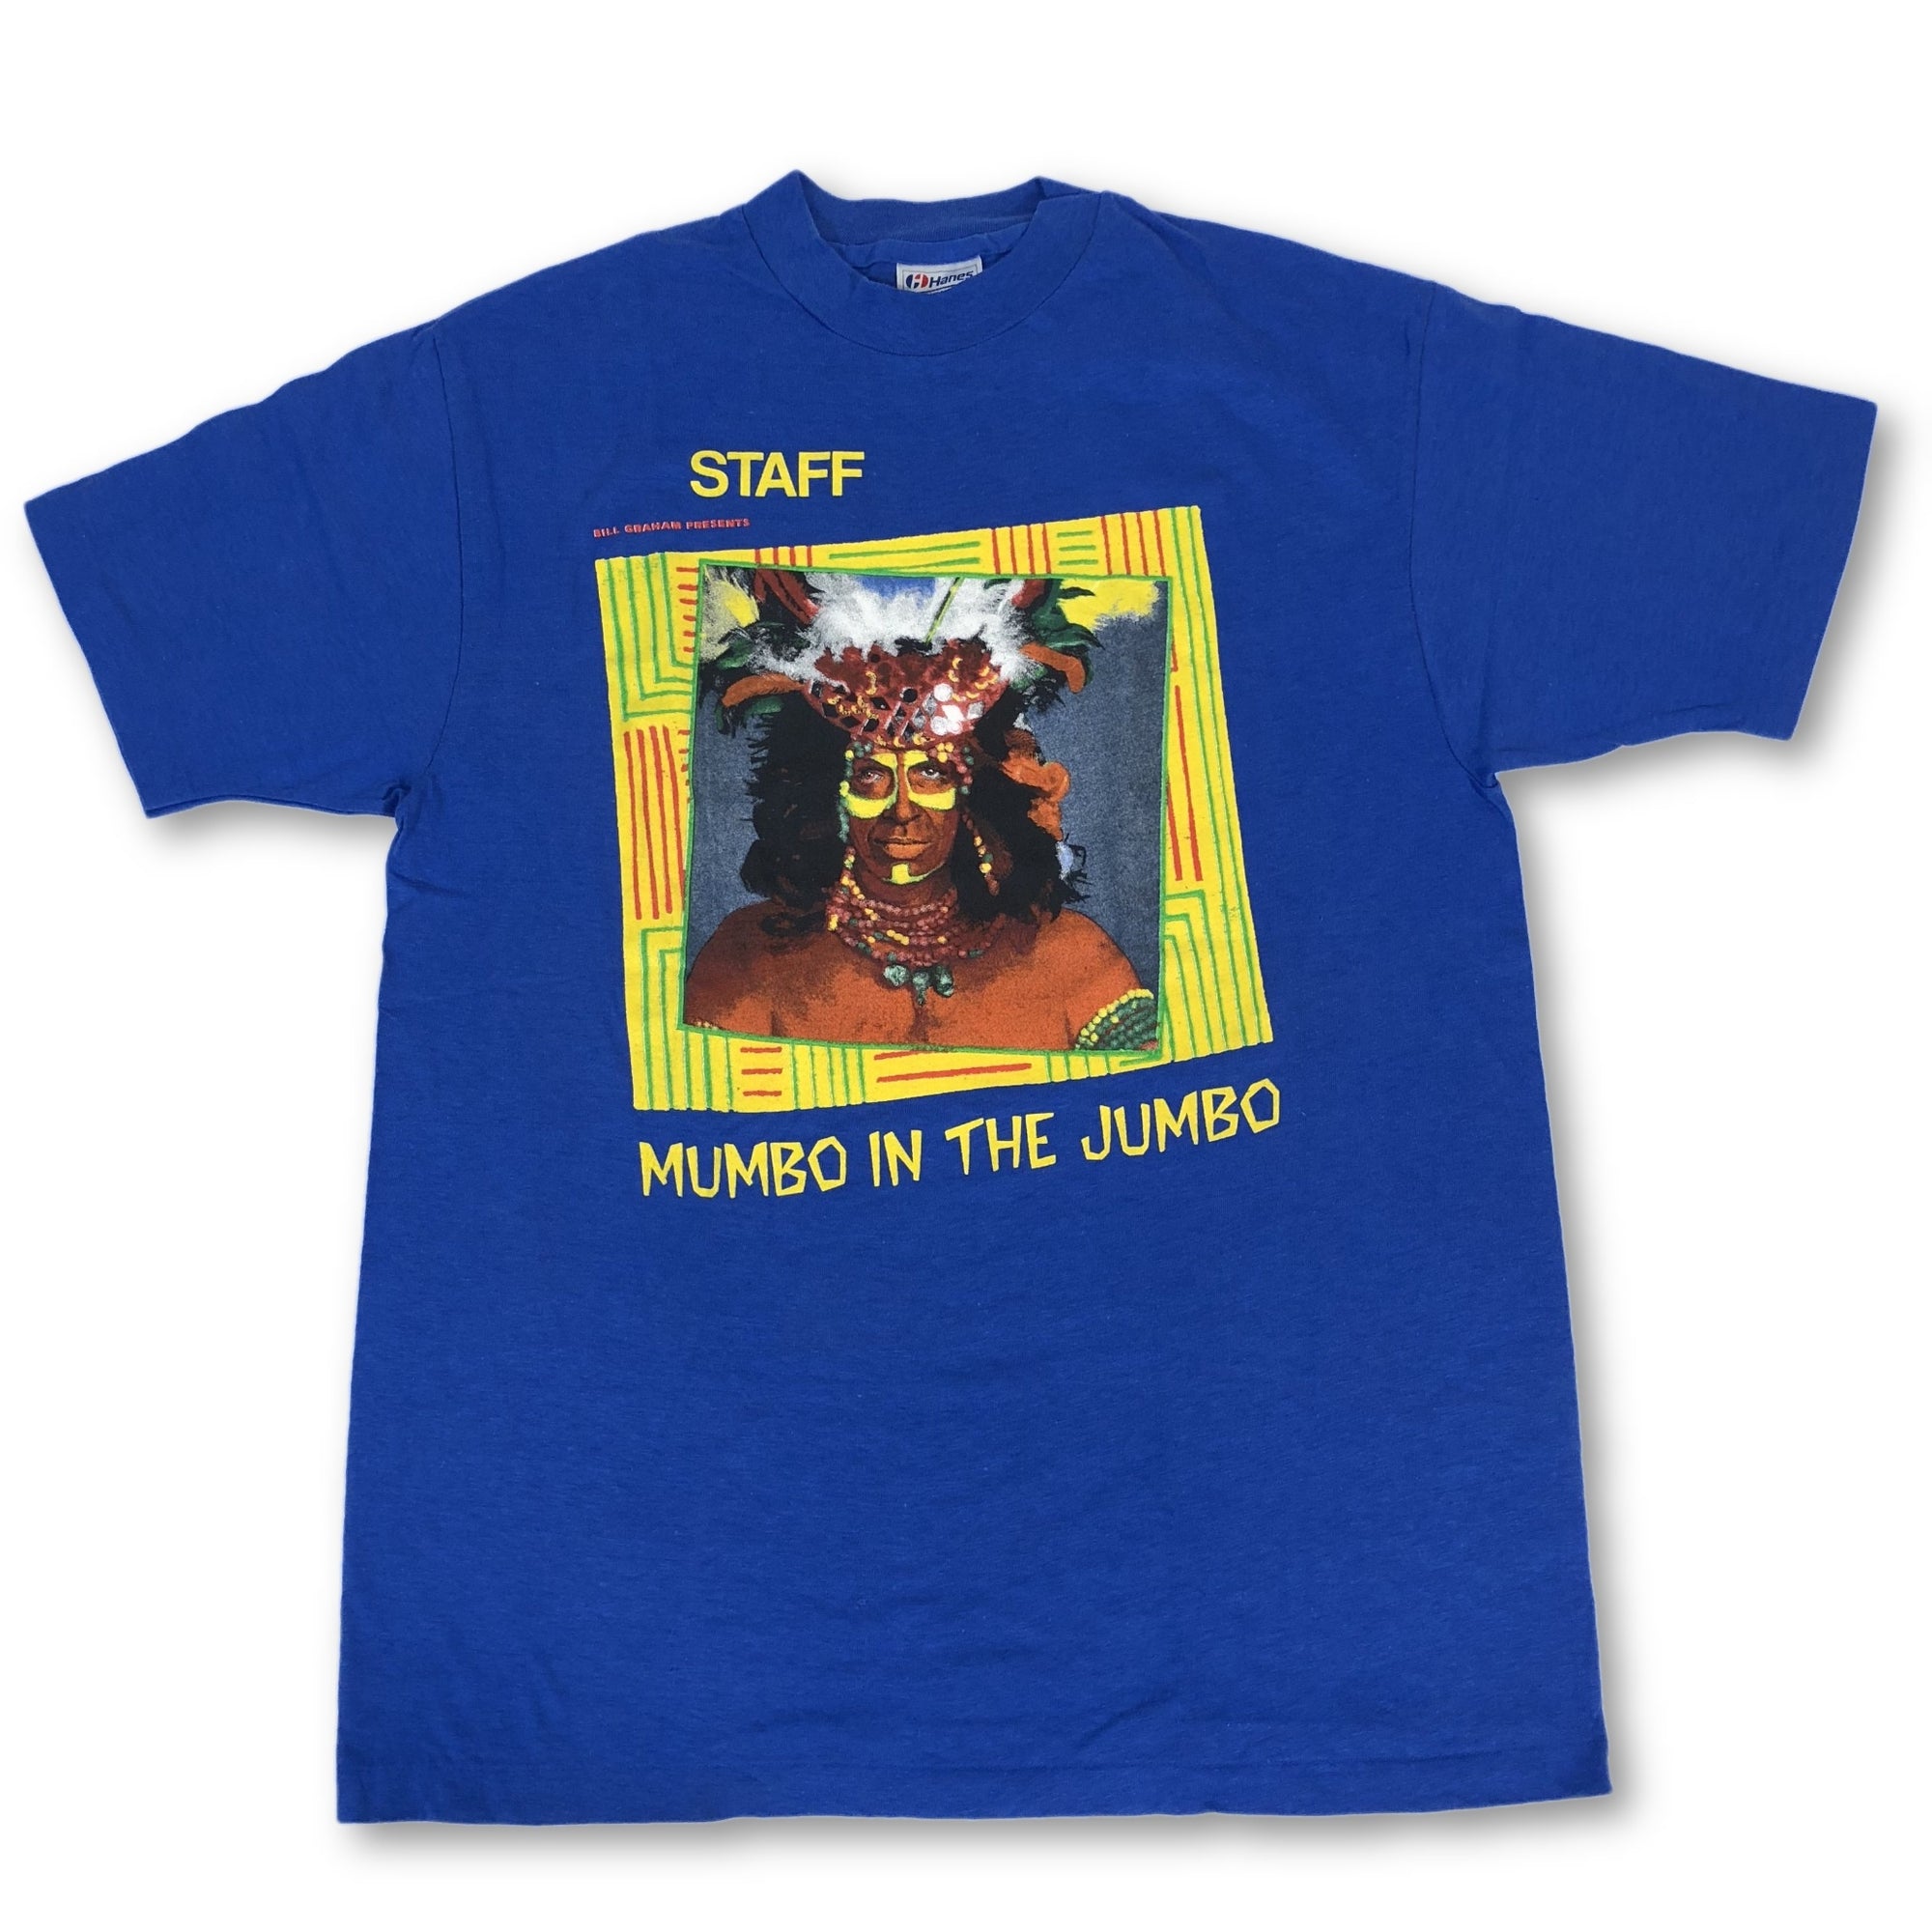 Vintage Grateful Dead "Mumbo In The Jumbo" Staff T-Shirt - jointcustodydc